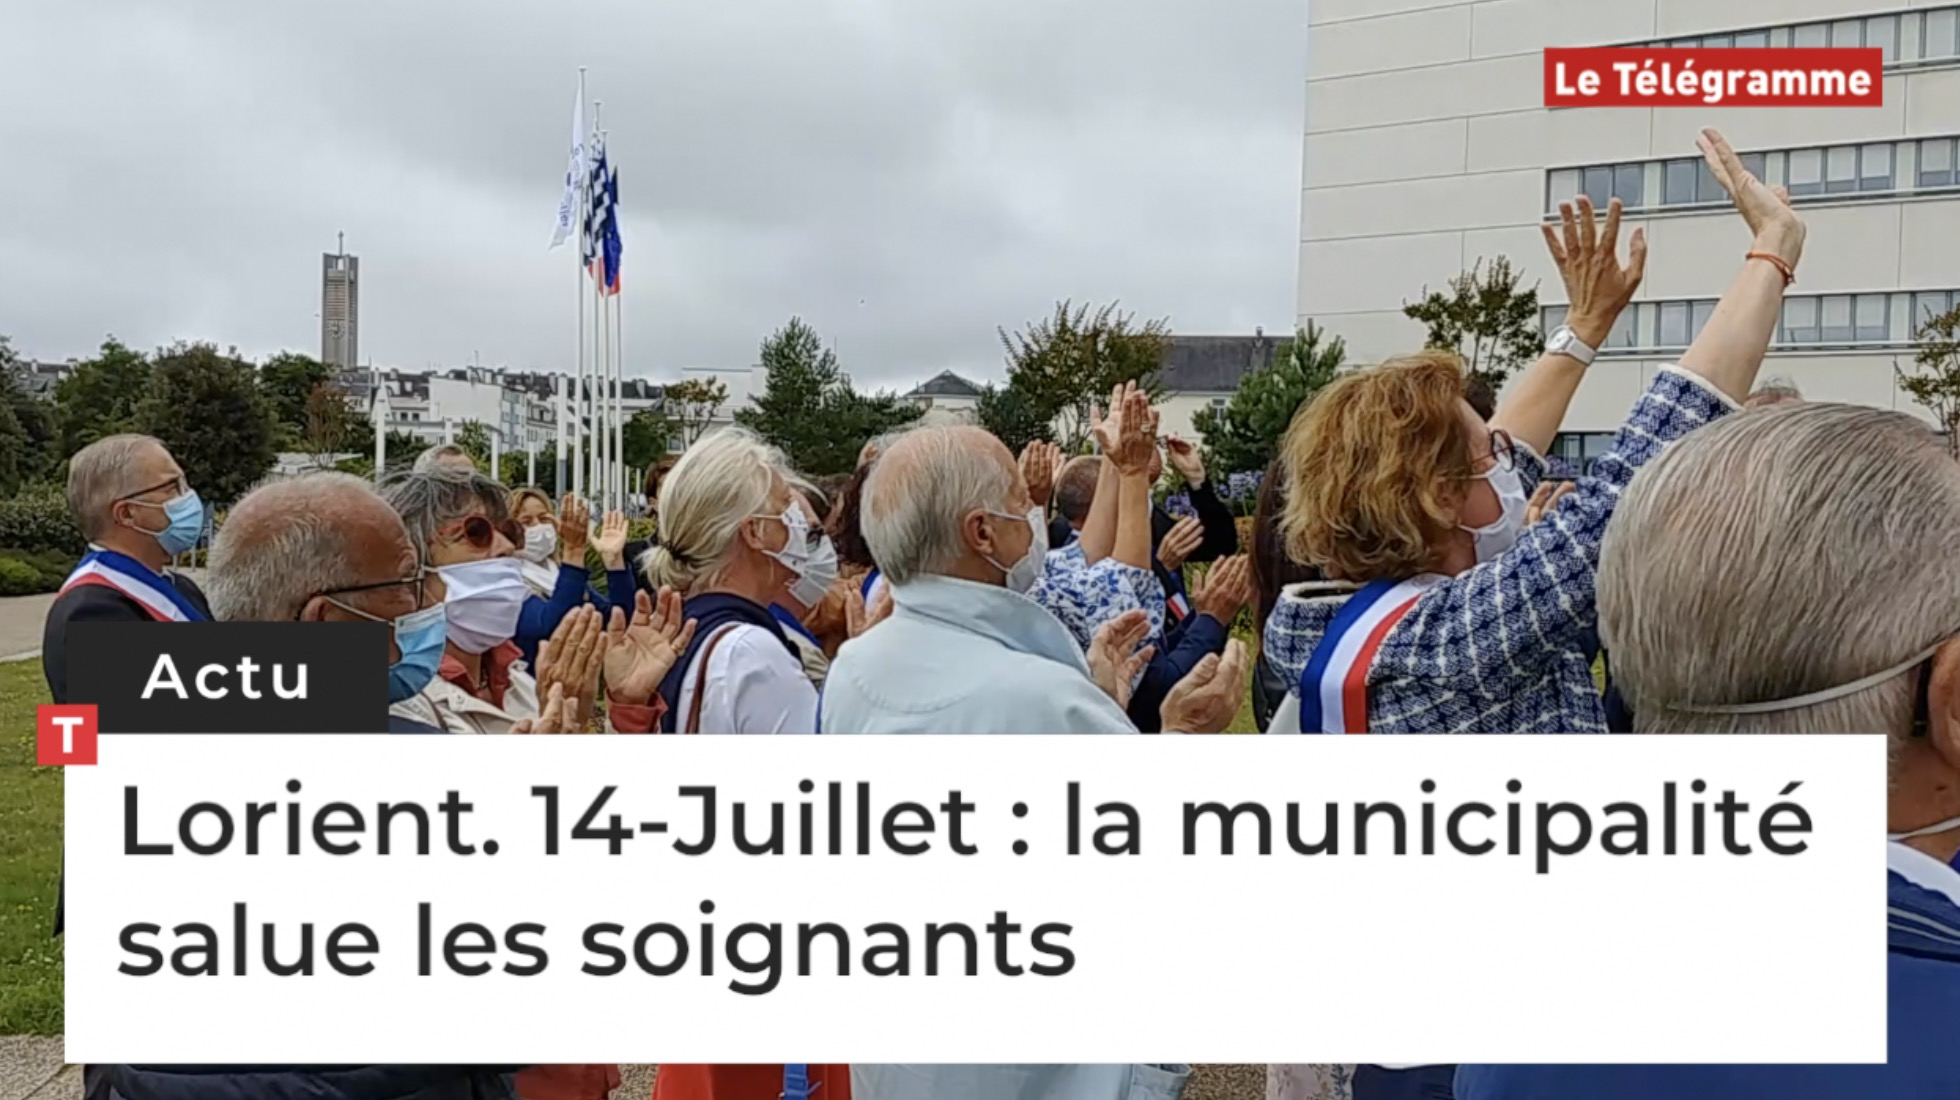 Lorient. 14-Juillet : la municipalité salue les soignants (Le Télégramme)